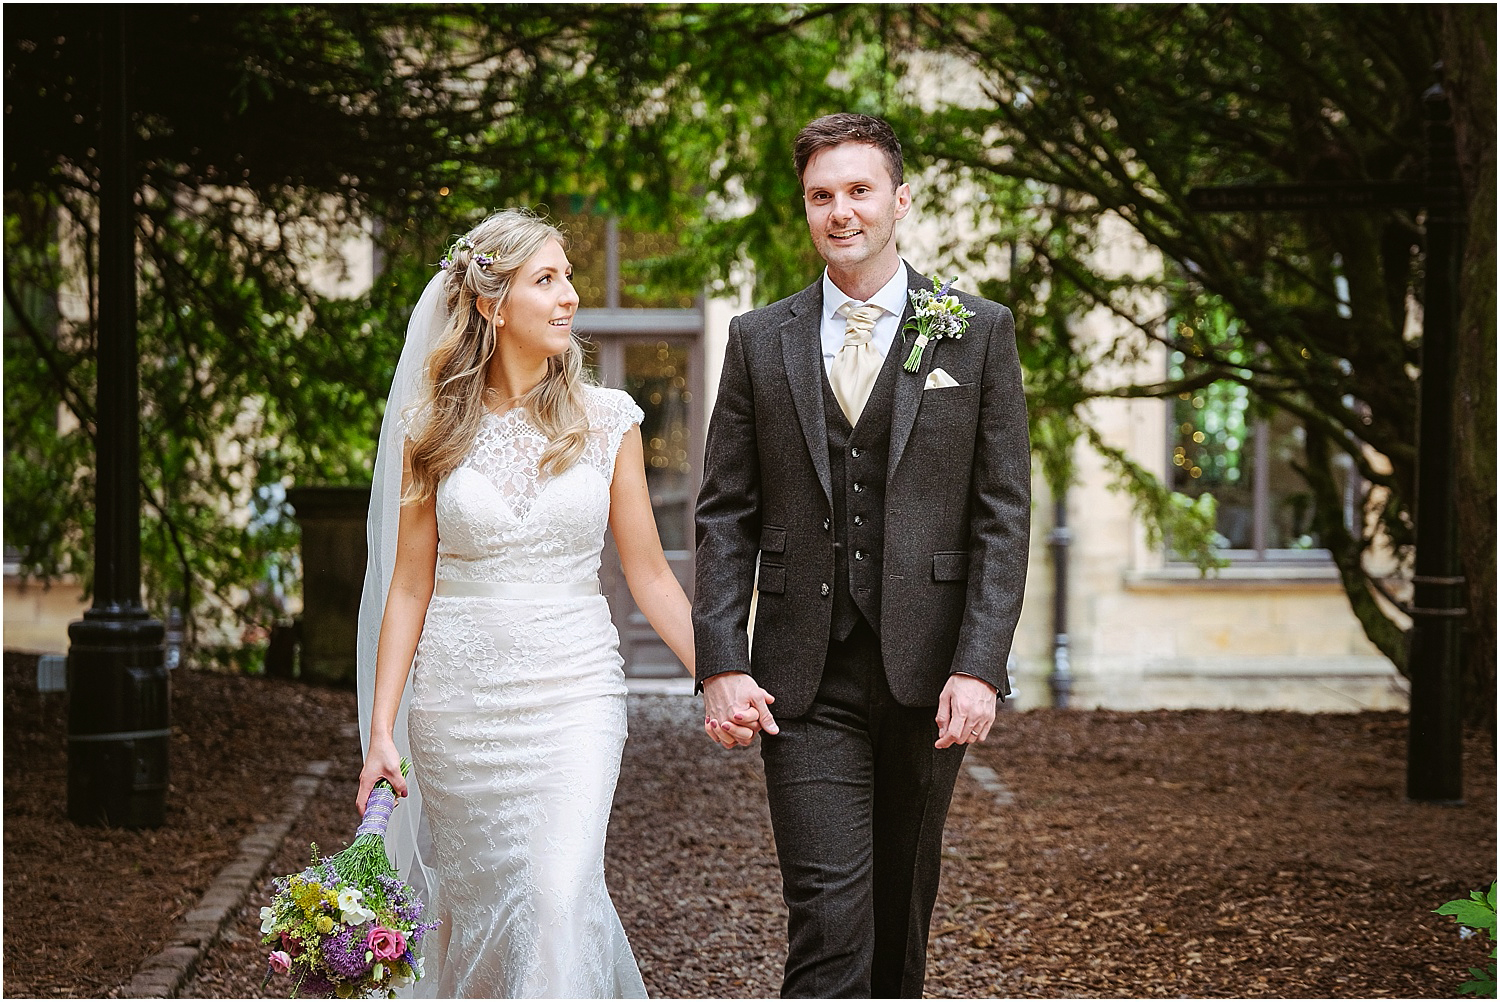 Beamish Hall wedding photography - Laura and Richard_0077.jpg